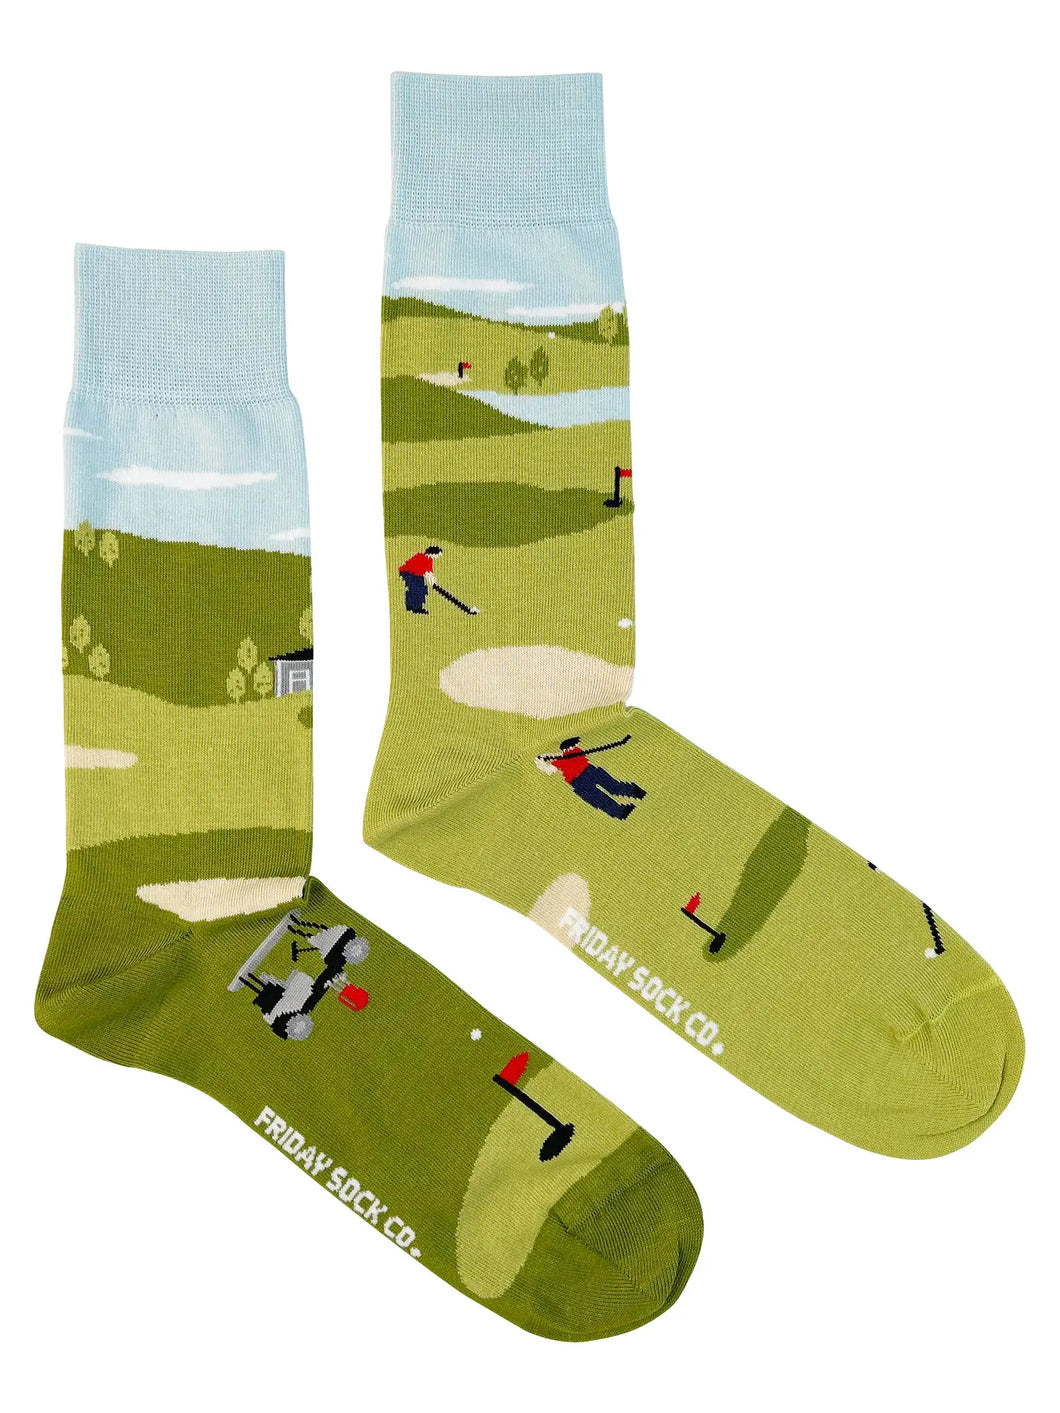 men's socks - golf scene